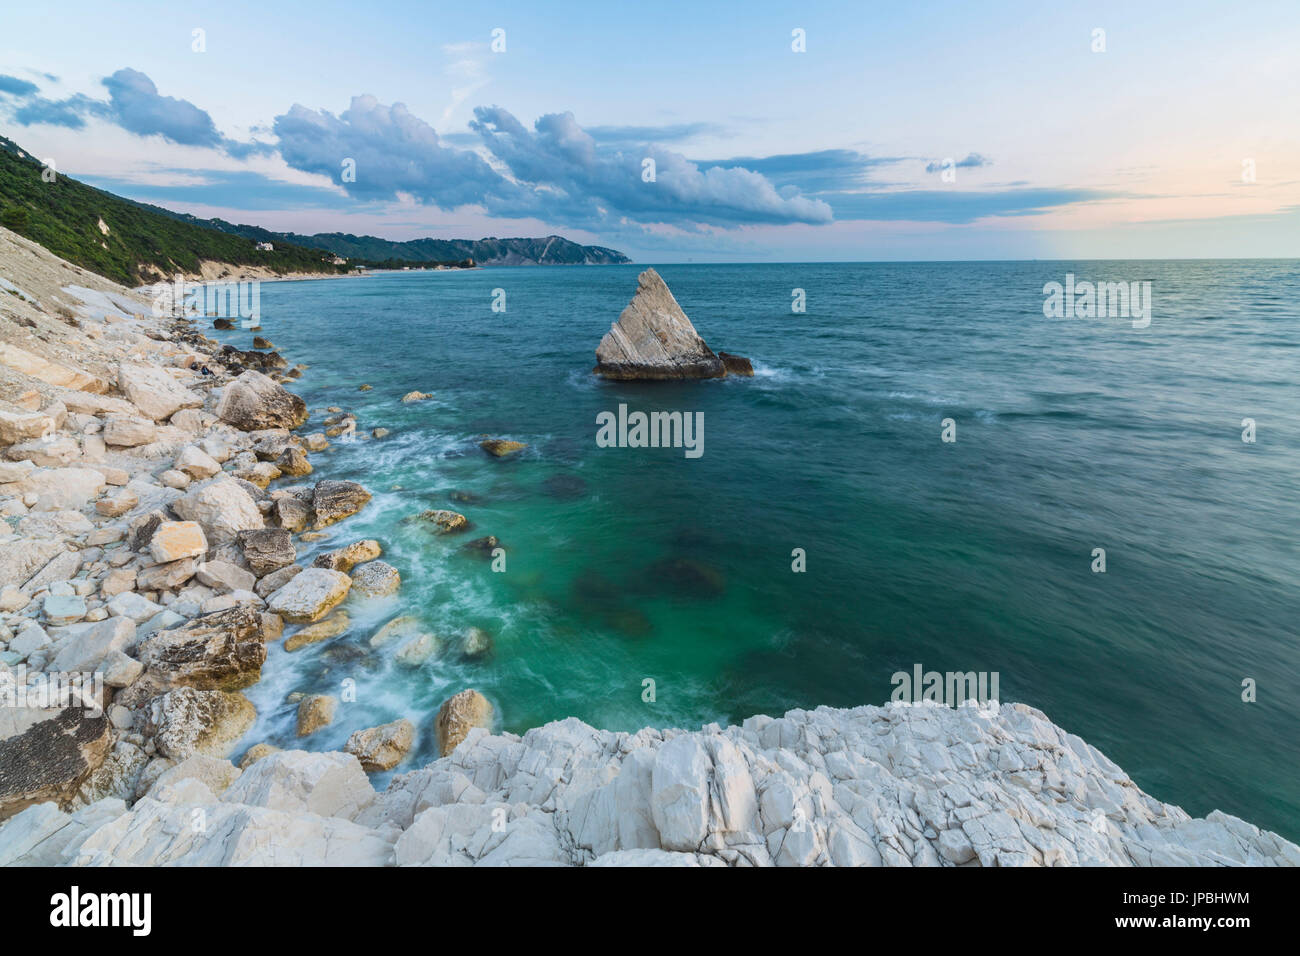 White cliffs frame the turquoise sea at sunrise La Vela Beach Portonovo province of Ancona Conero Riviera Marche Italy Europe Stock Photo